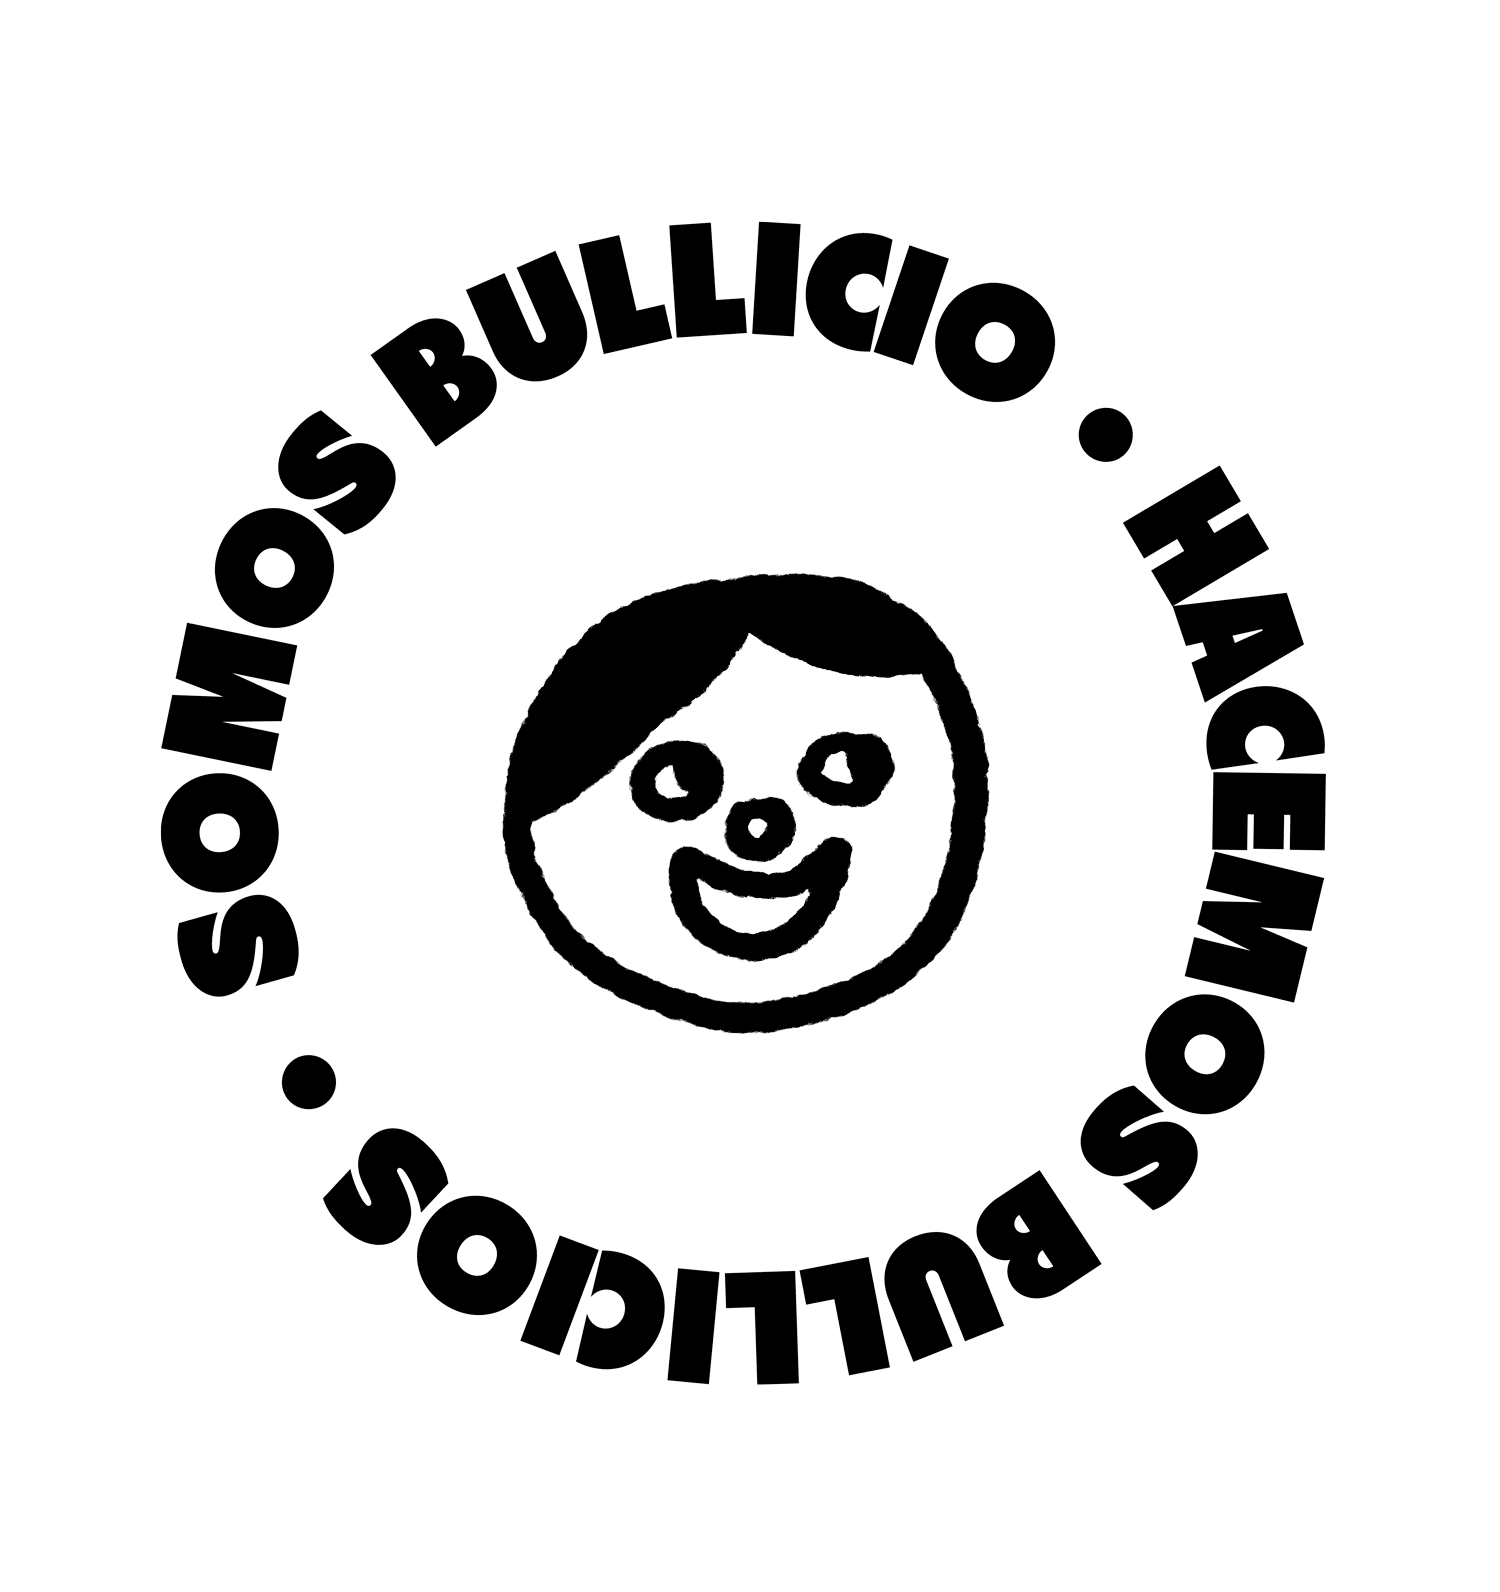 Bullicio news